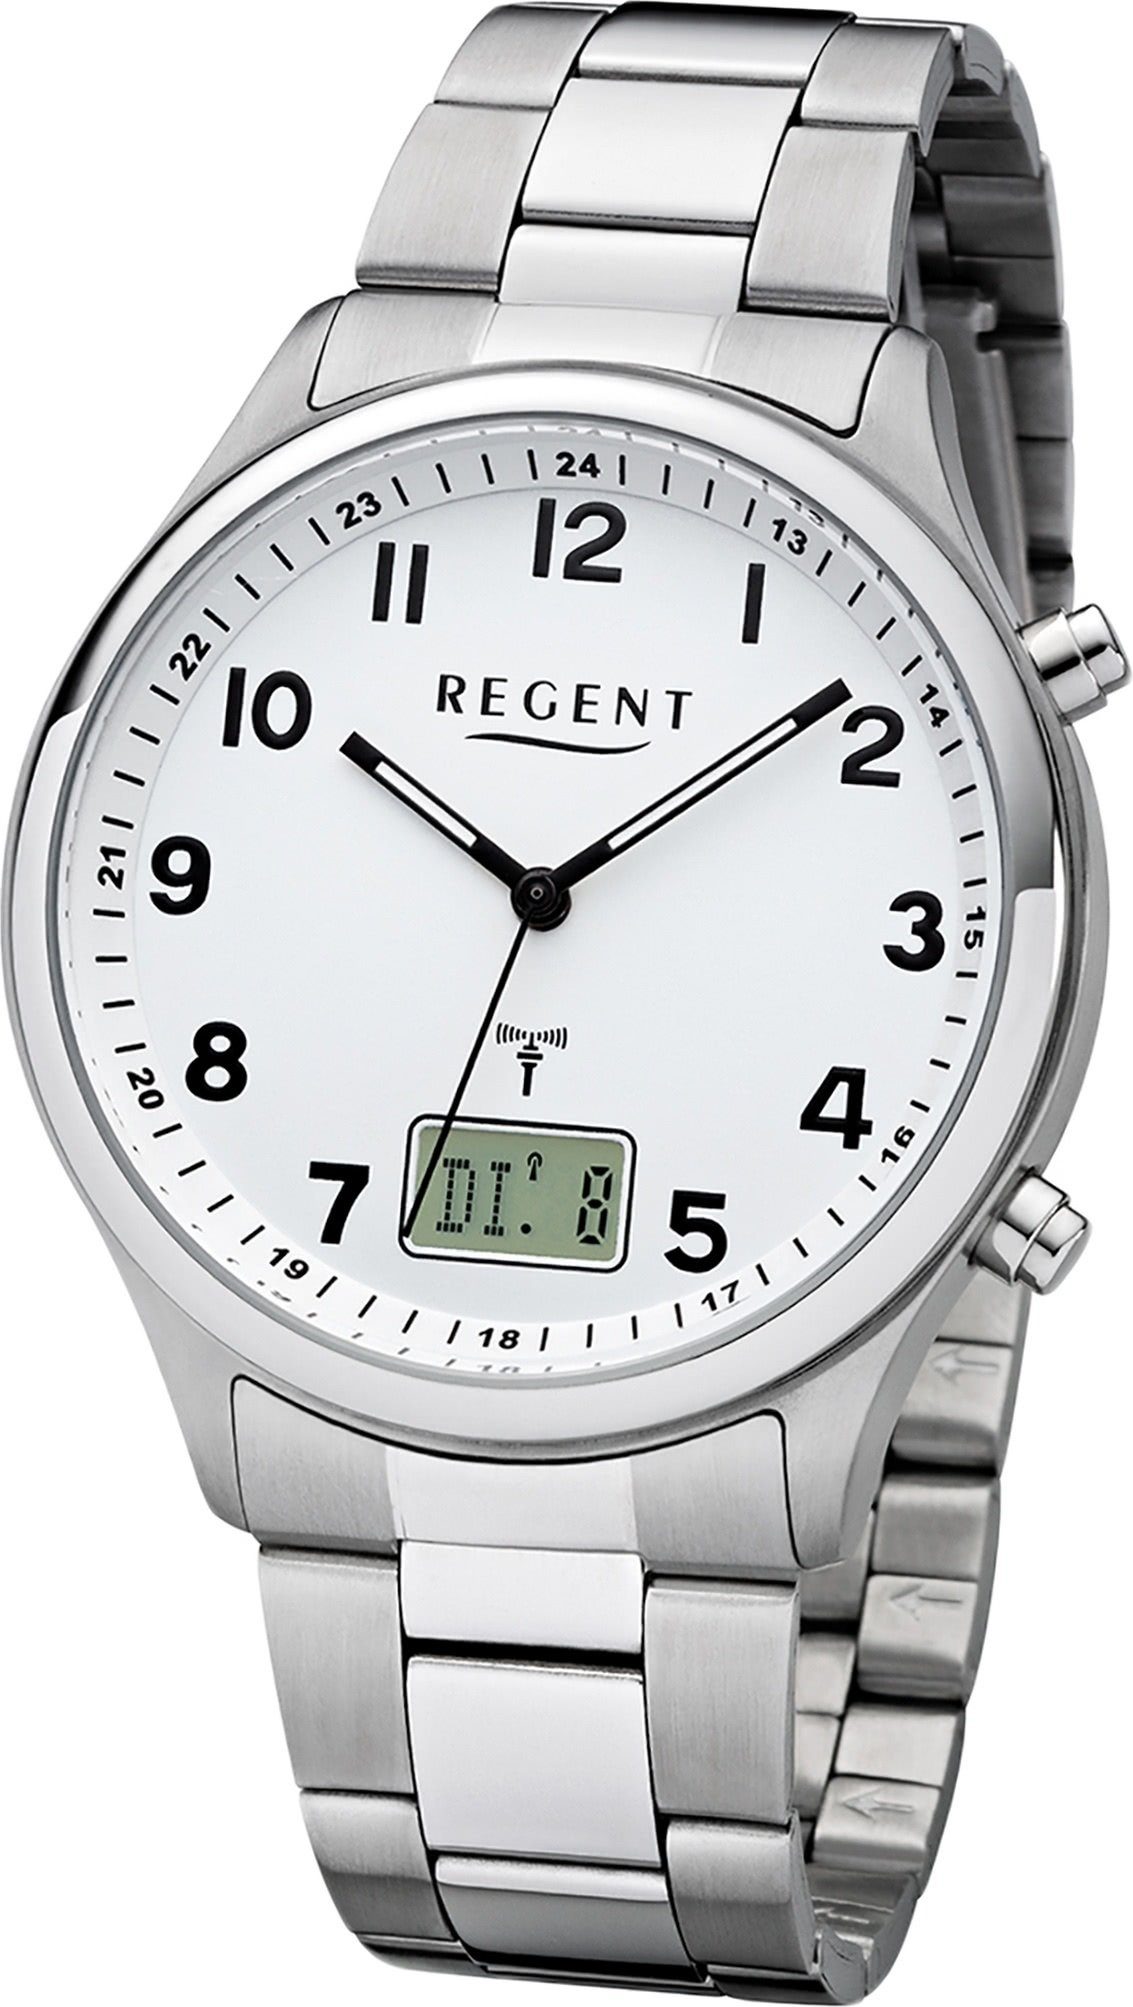 Regent Funkuhr Regent BA-444, (ca. 40mm) Uhr Metall Herren groß rundes Metallarmband Gehäuse, silber, Herrenuhr